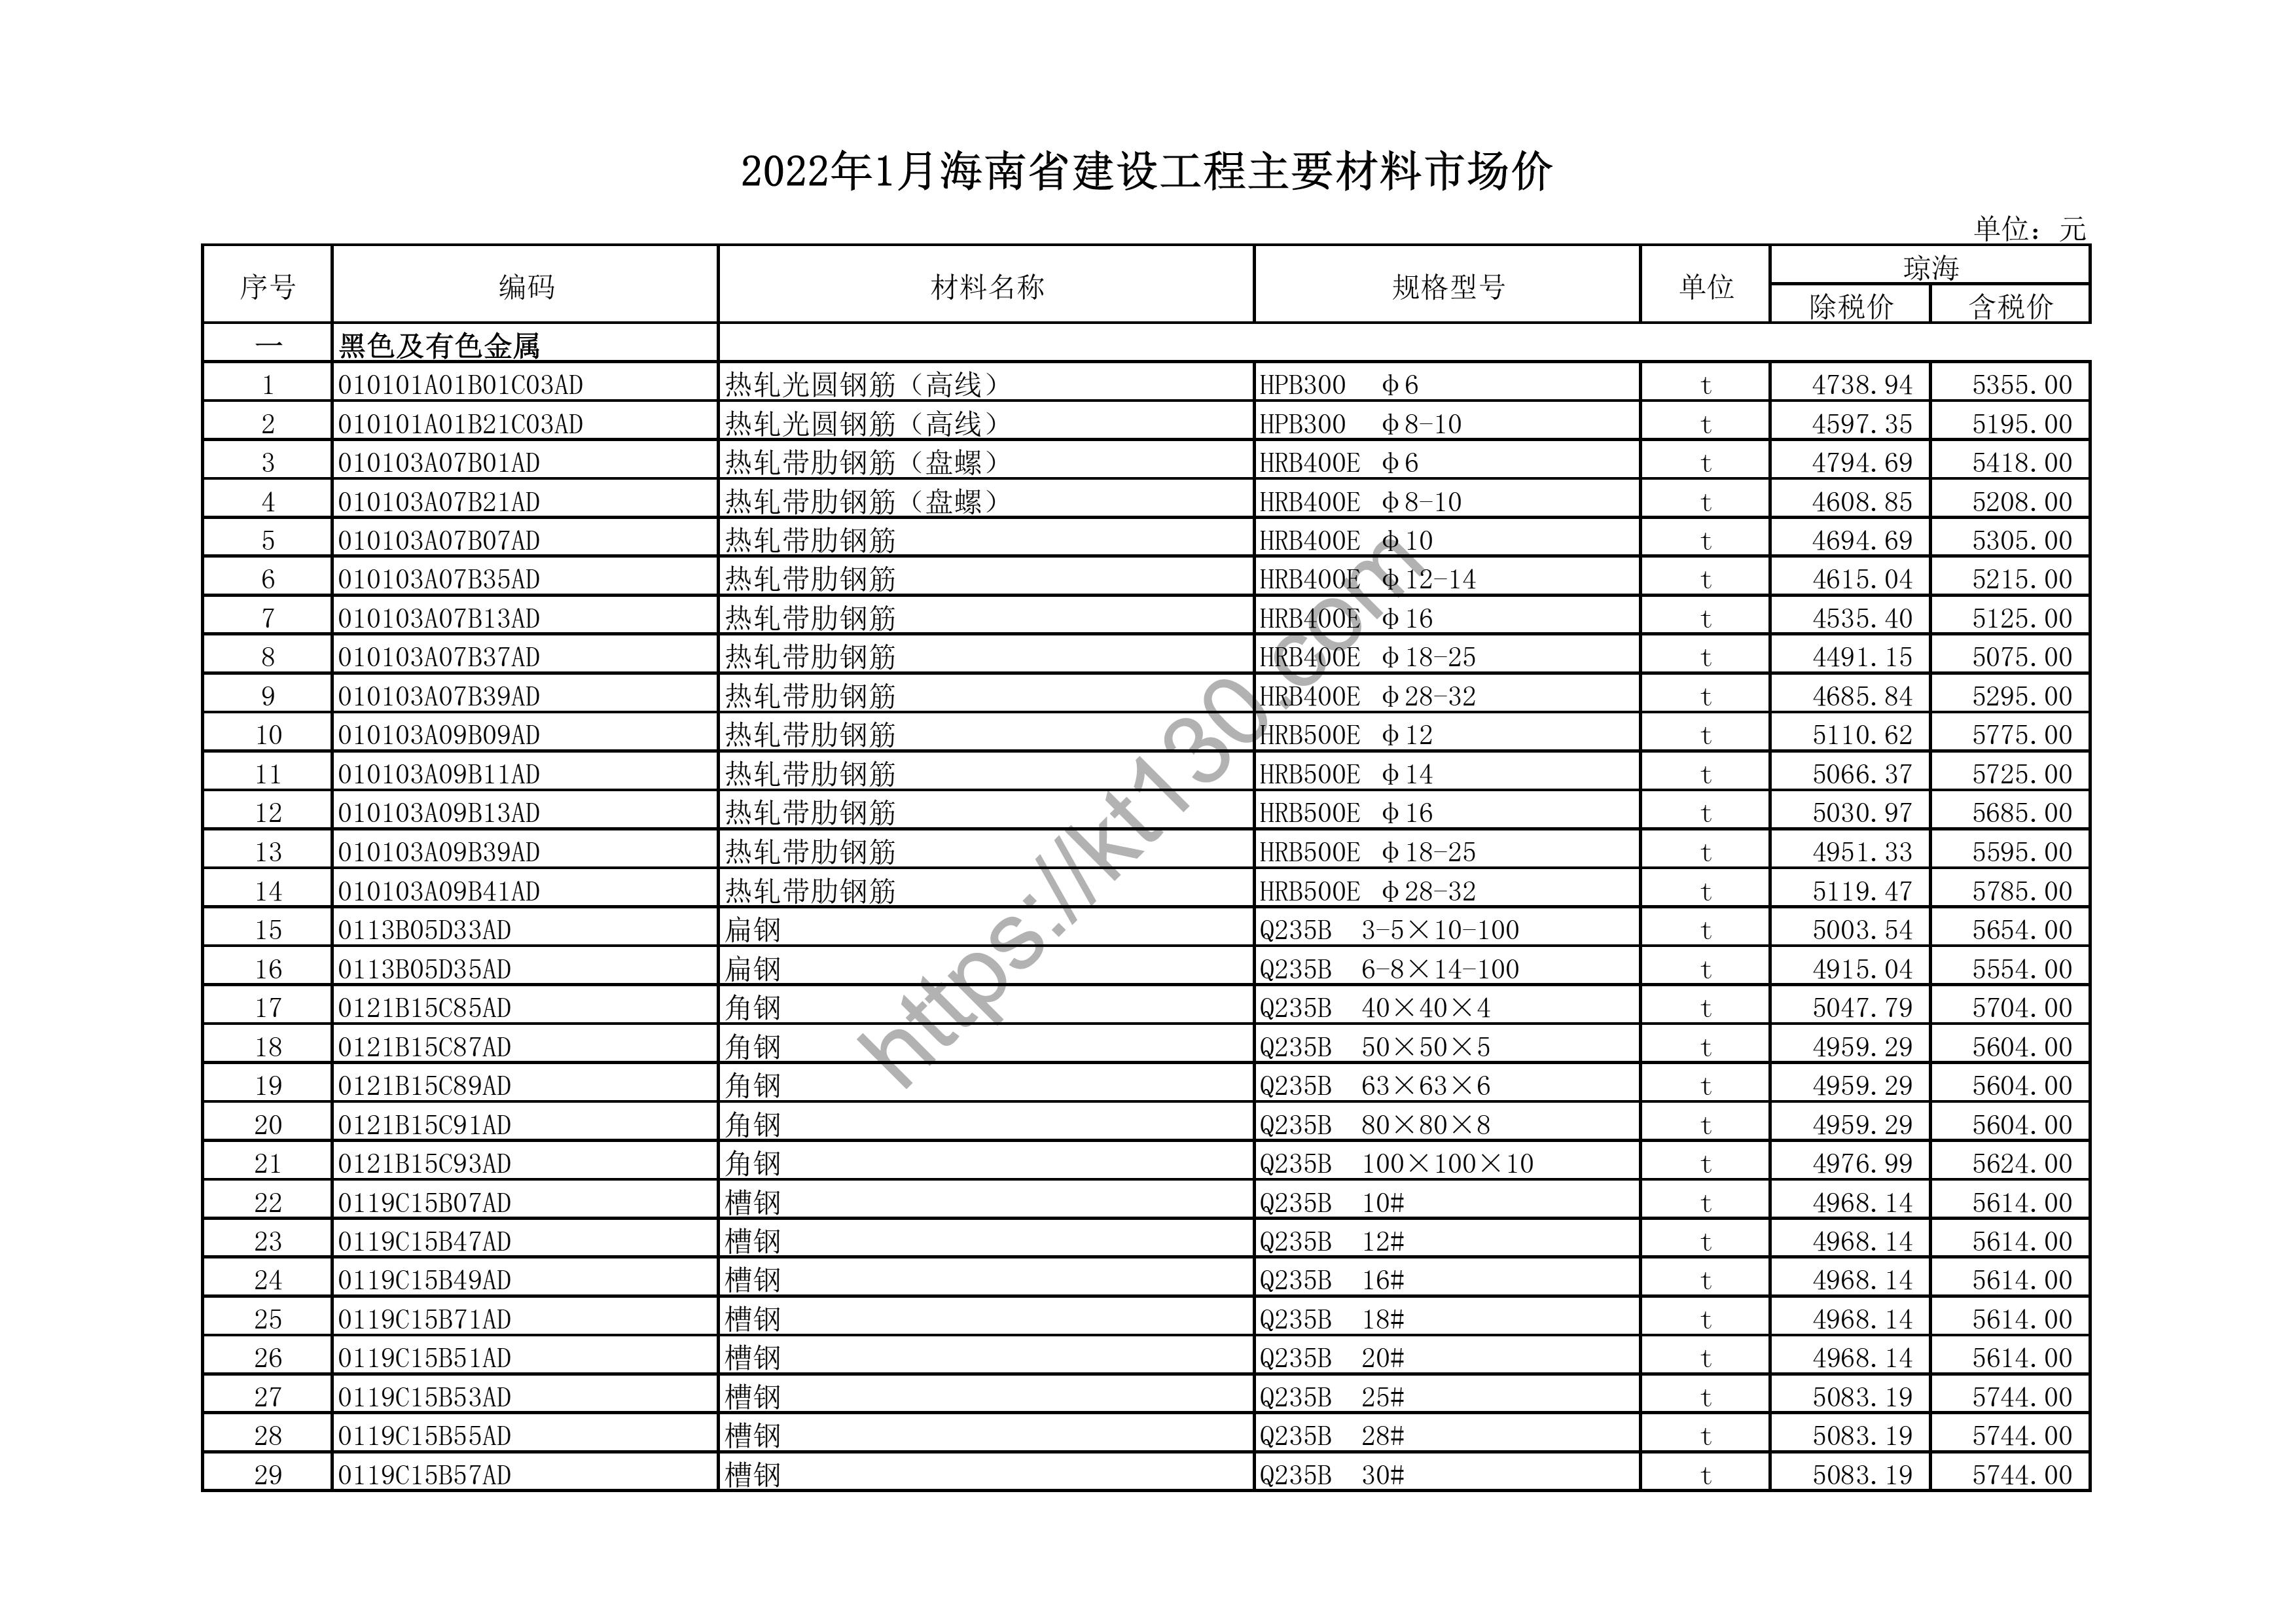 海南省2022年1月建筑材料价_高线_43649